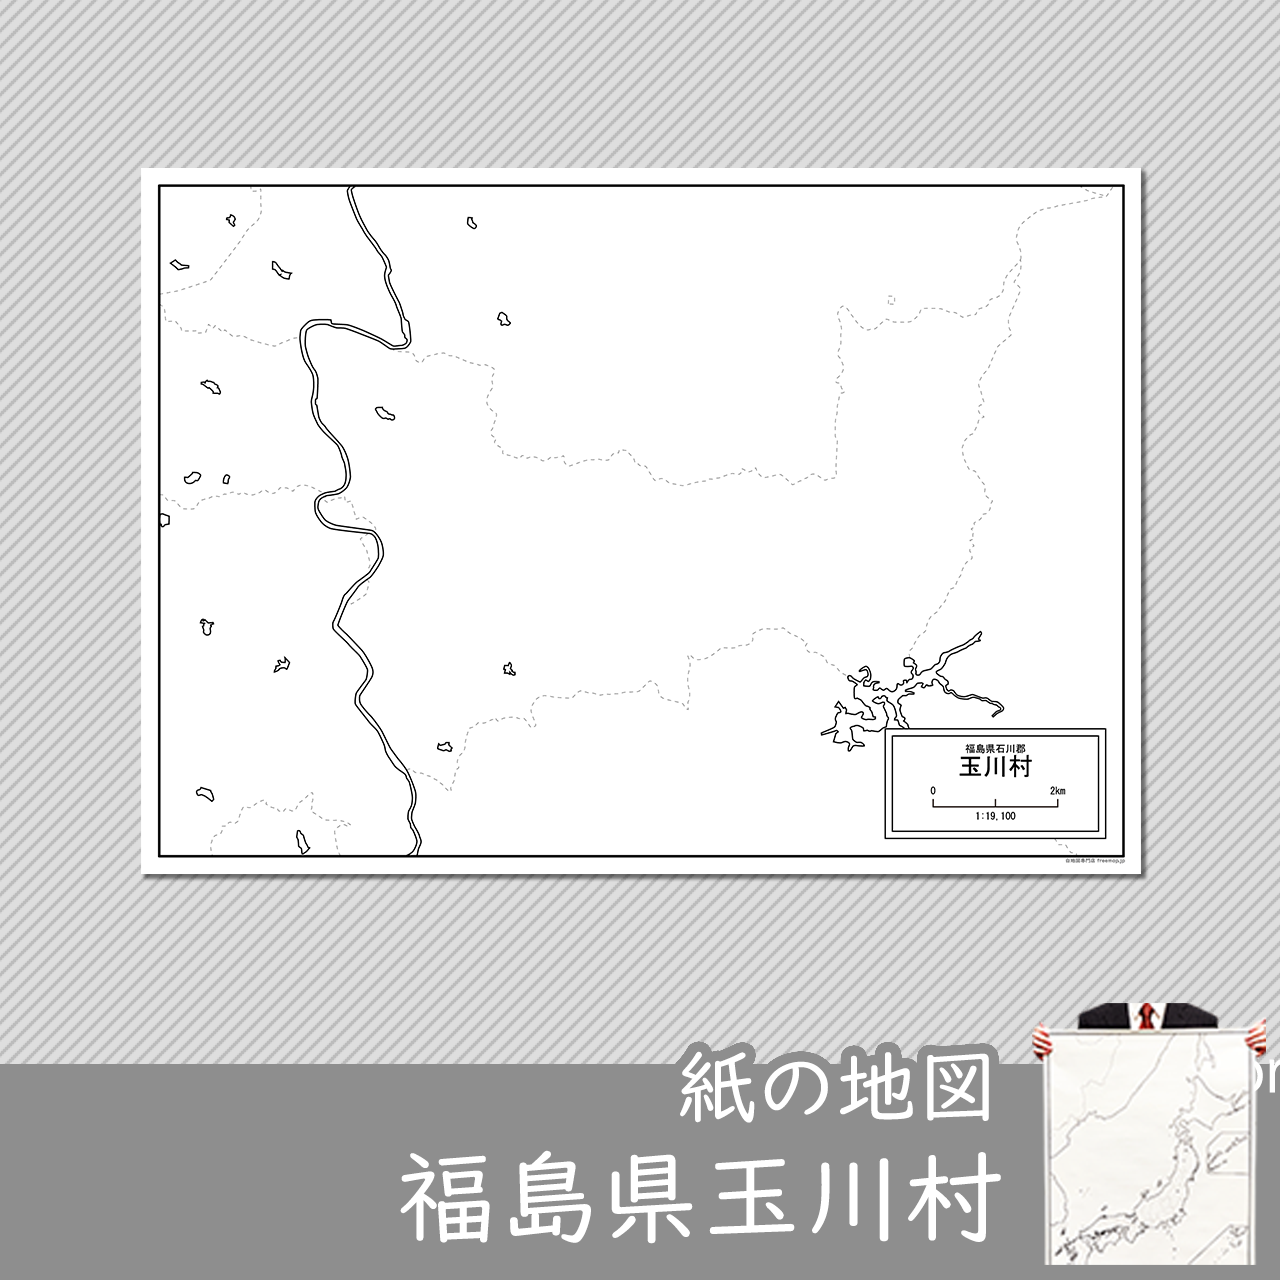 玉川村の紙の白地図のサムネイル